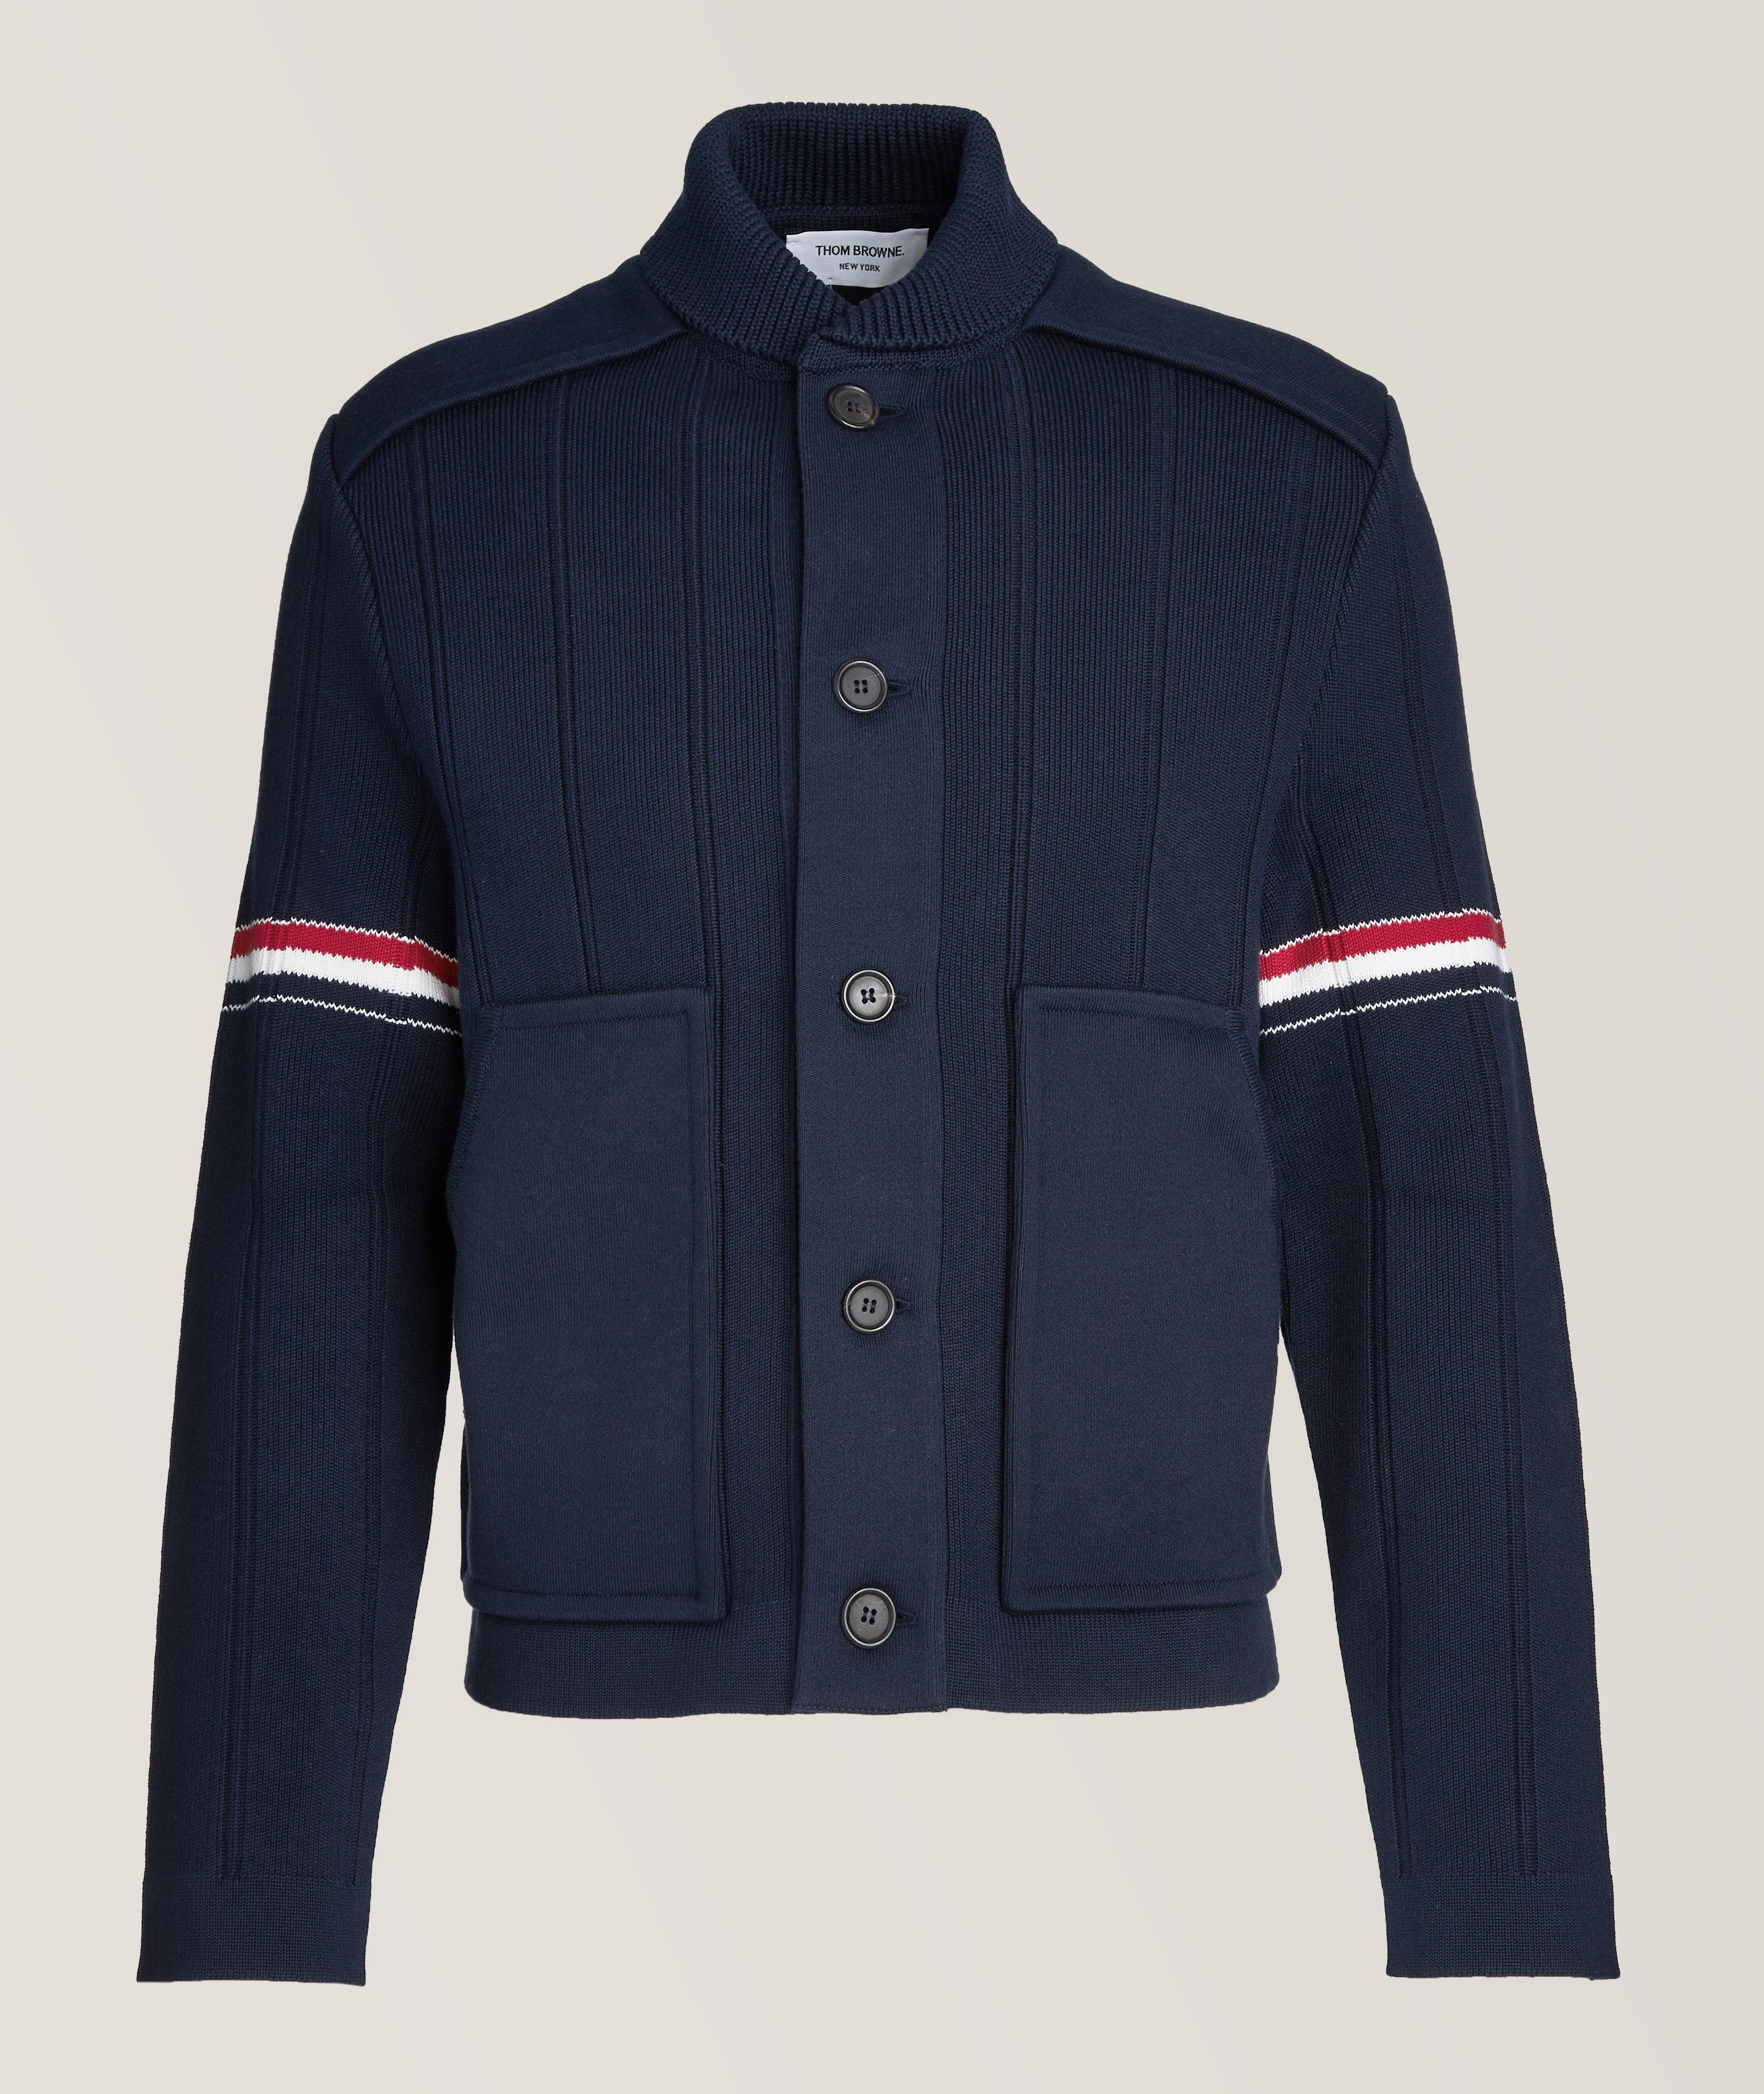 Thom Browne Double Fleece Cotton-Cashmere Blend Jacket